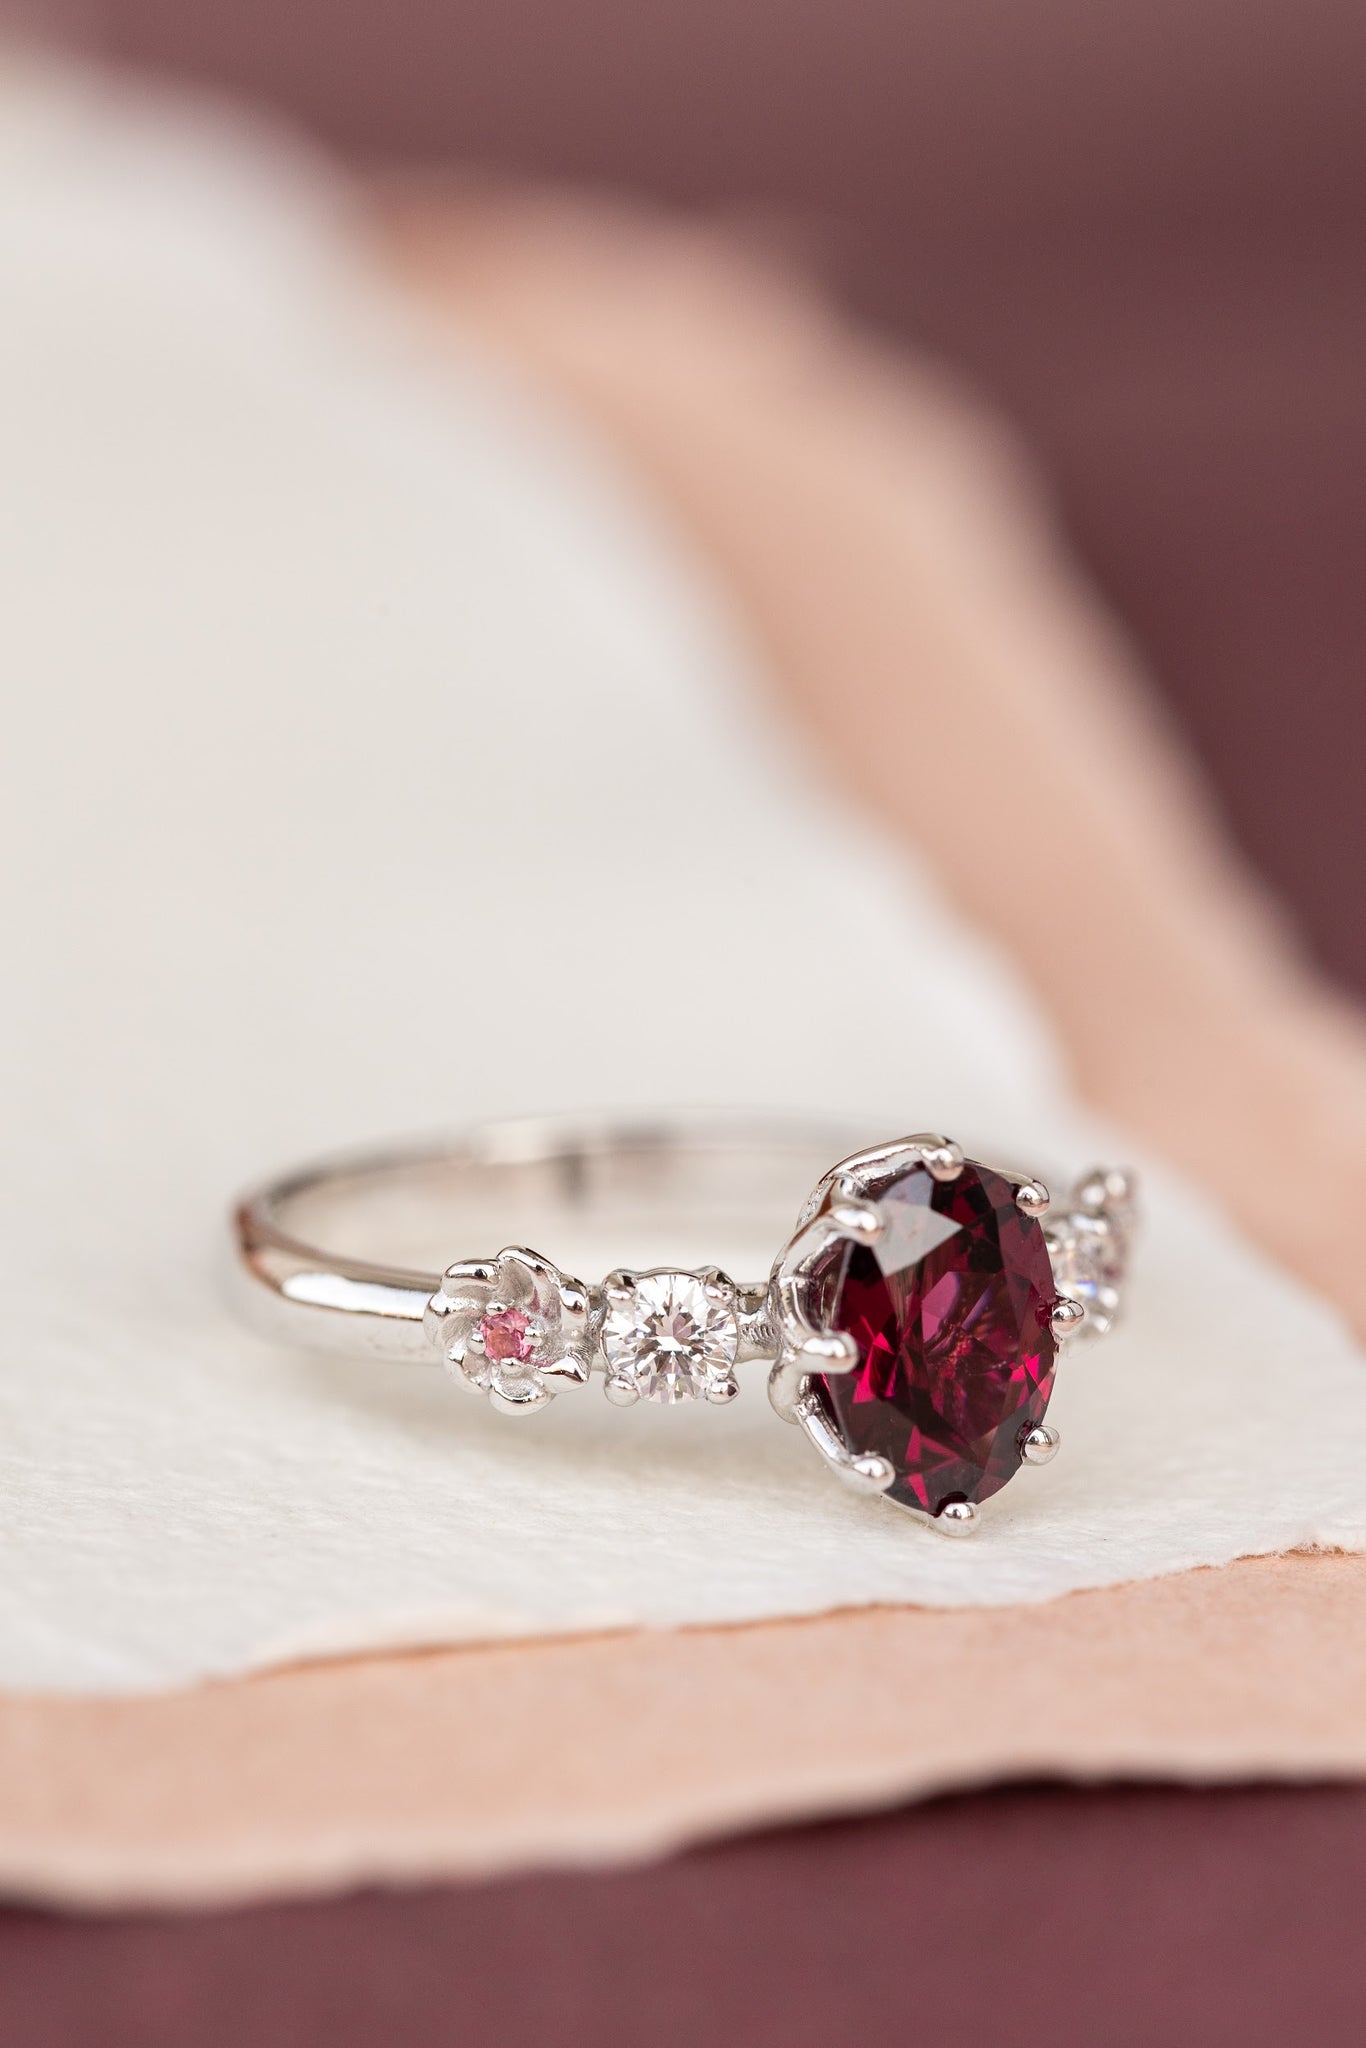 Rhodolite garnet engagement ring, white gold flower ring with diamonds and tourmalines / Fiorella - Eden Garden Jewelry™